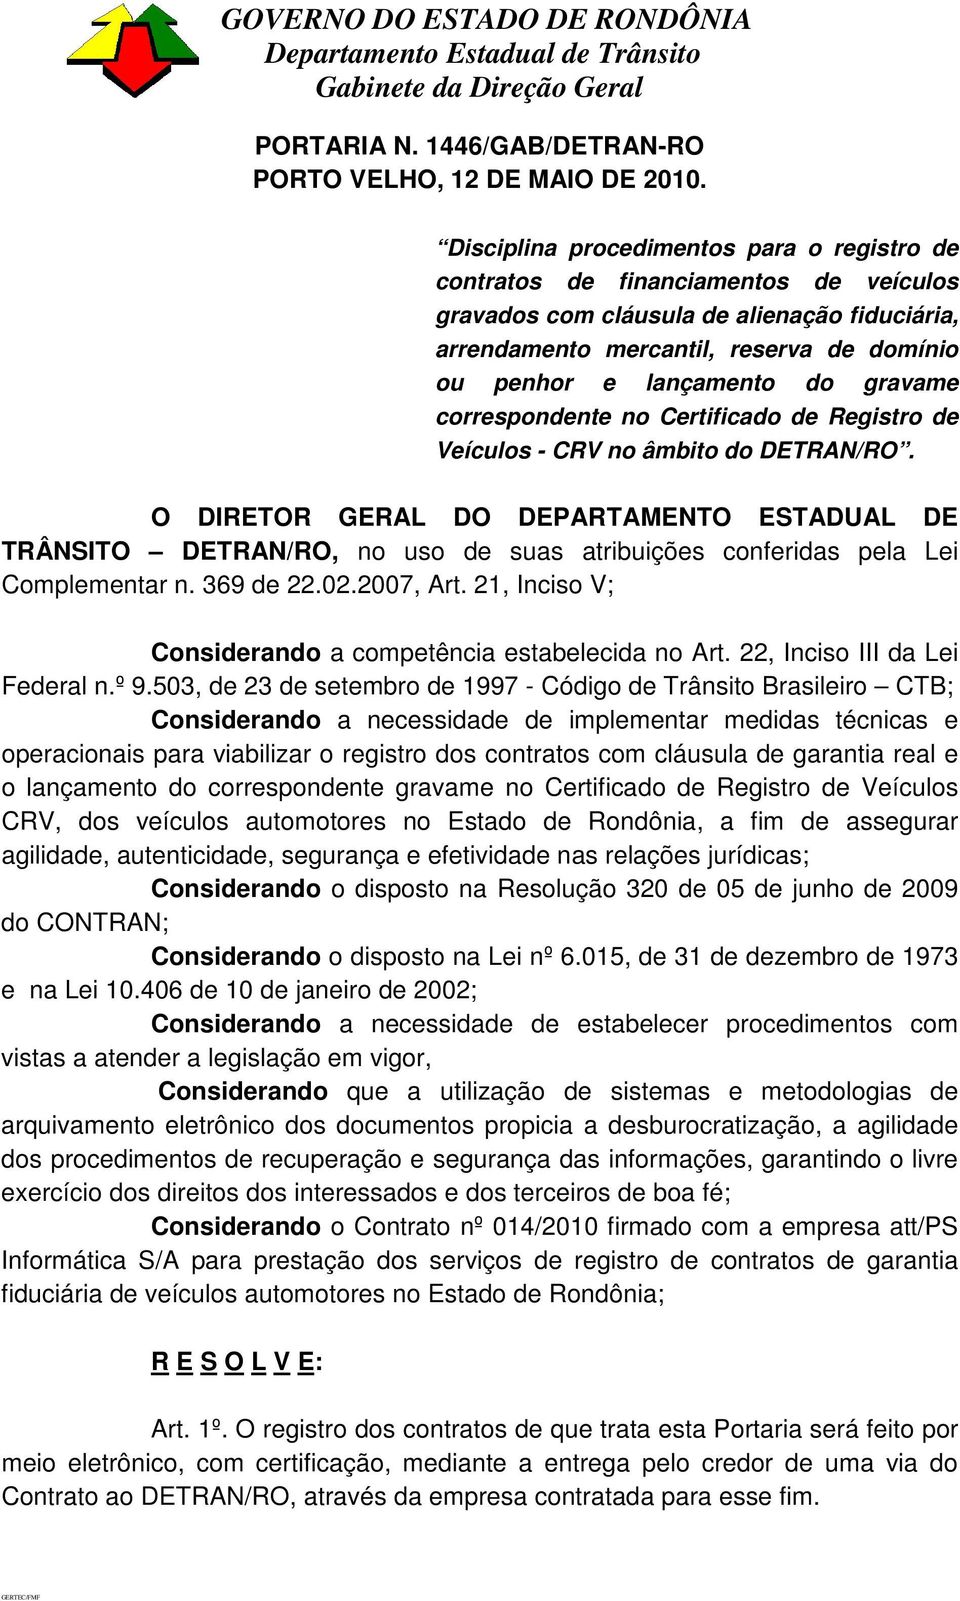 gravame correspondente no Certificado de Registro de Veículos - CRV no âmbito do DETRAN/RO.